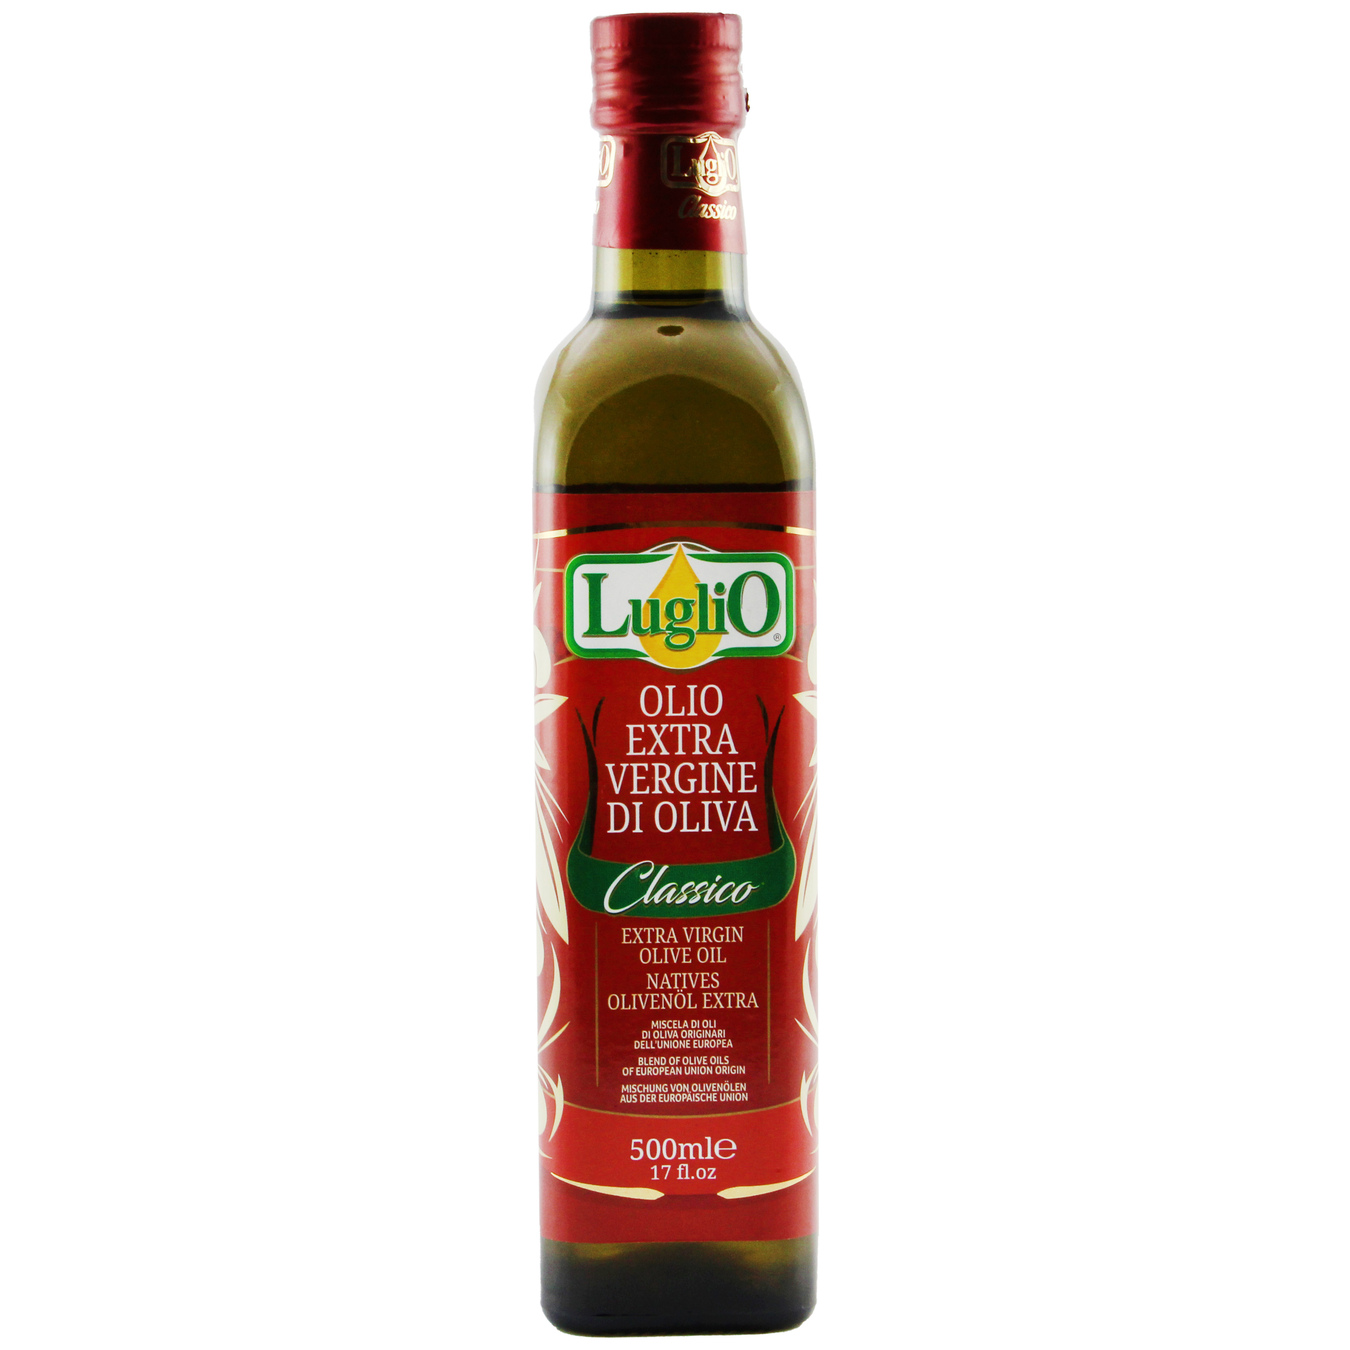 Luglio Extra Virgin Unrefined Olive Oil 500ml glass